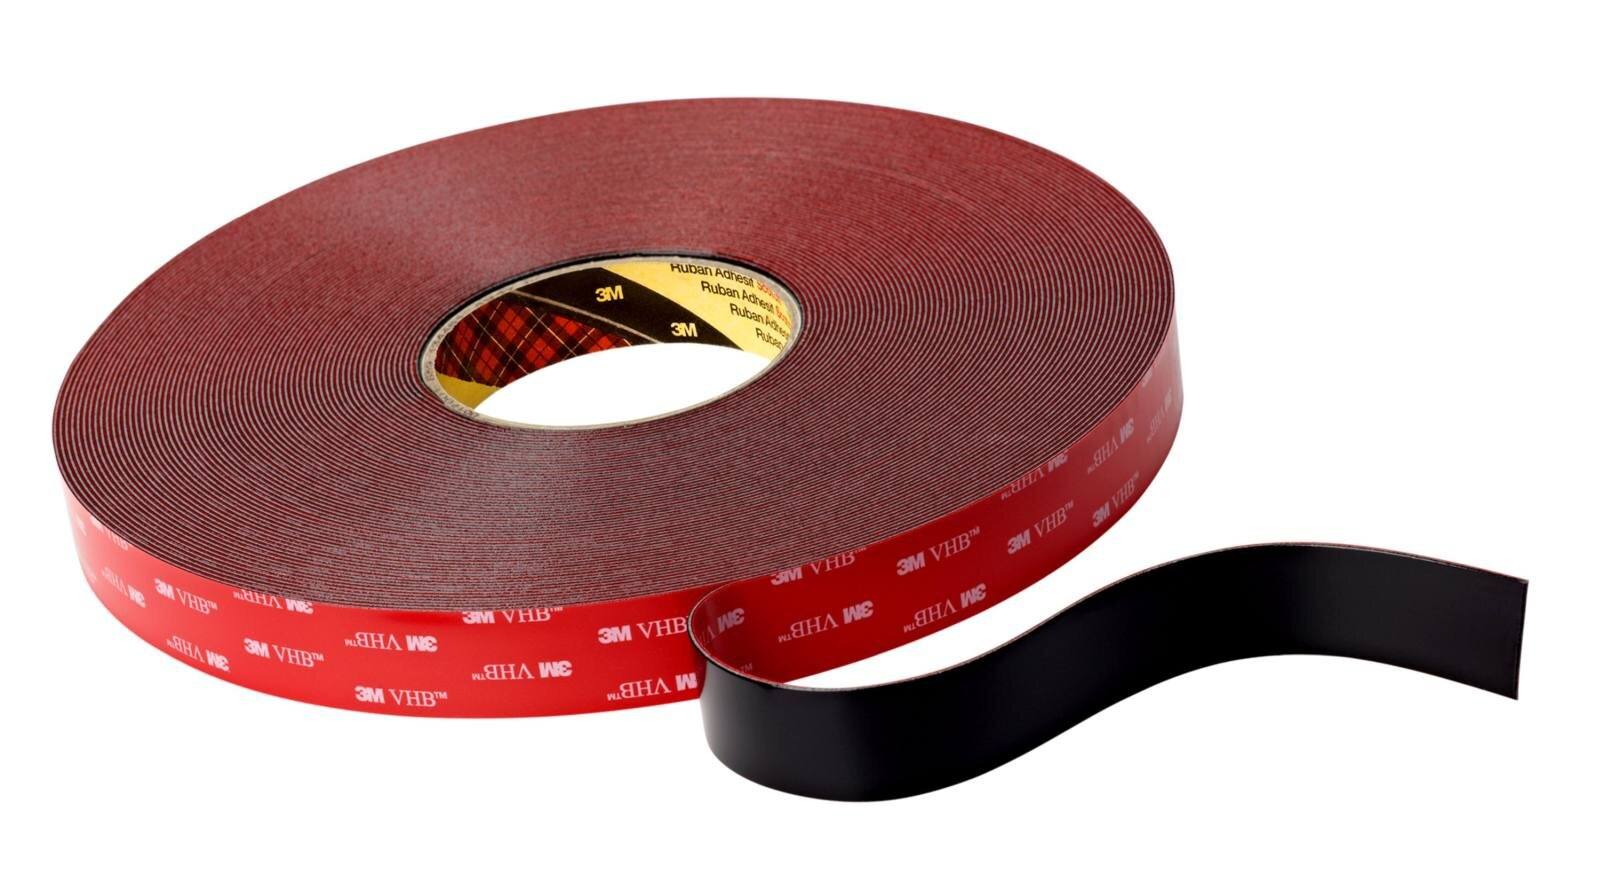 3M VHB Adhesive tape 5925F, black, 6 mm x 66 m, 0.6 mm